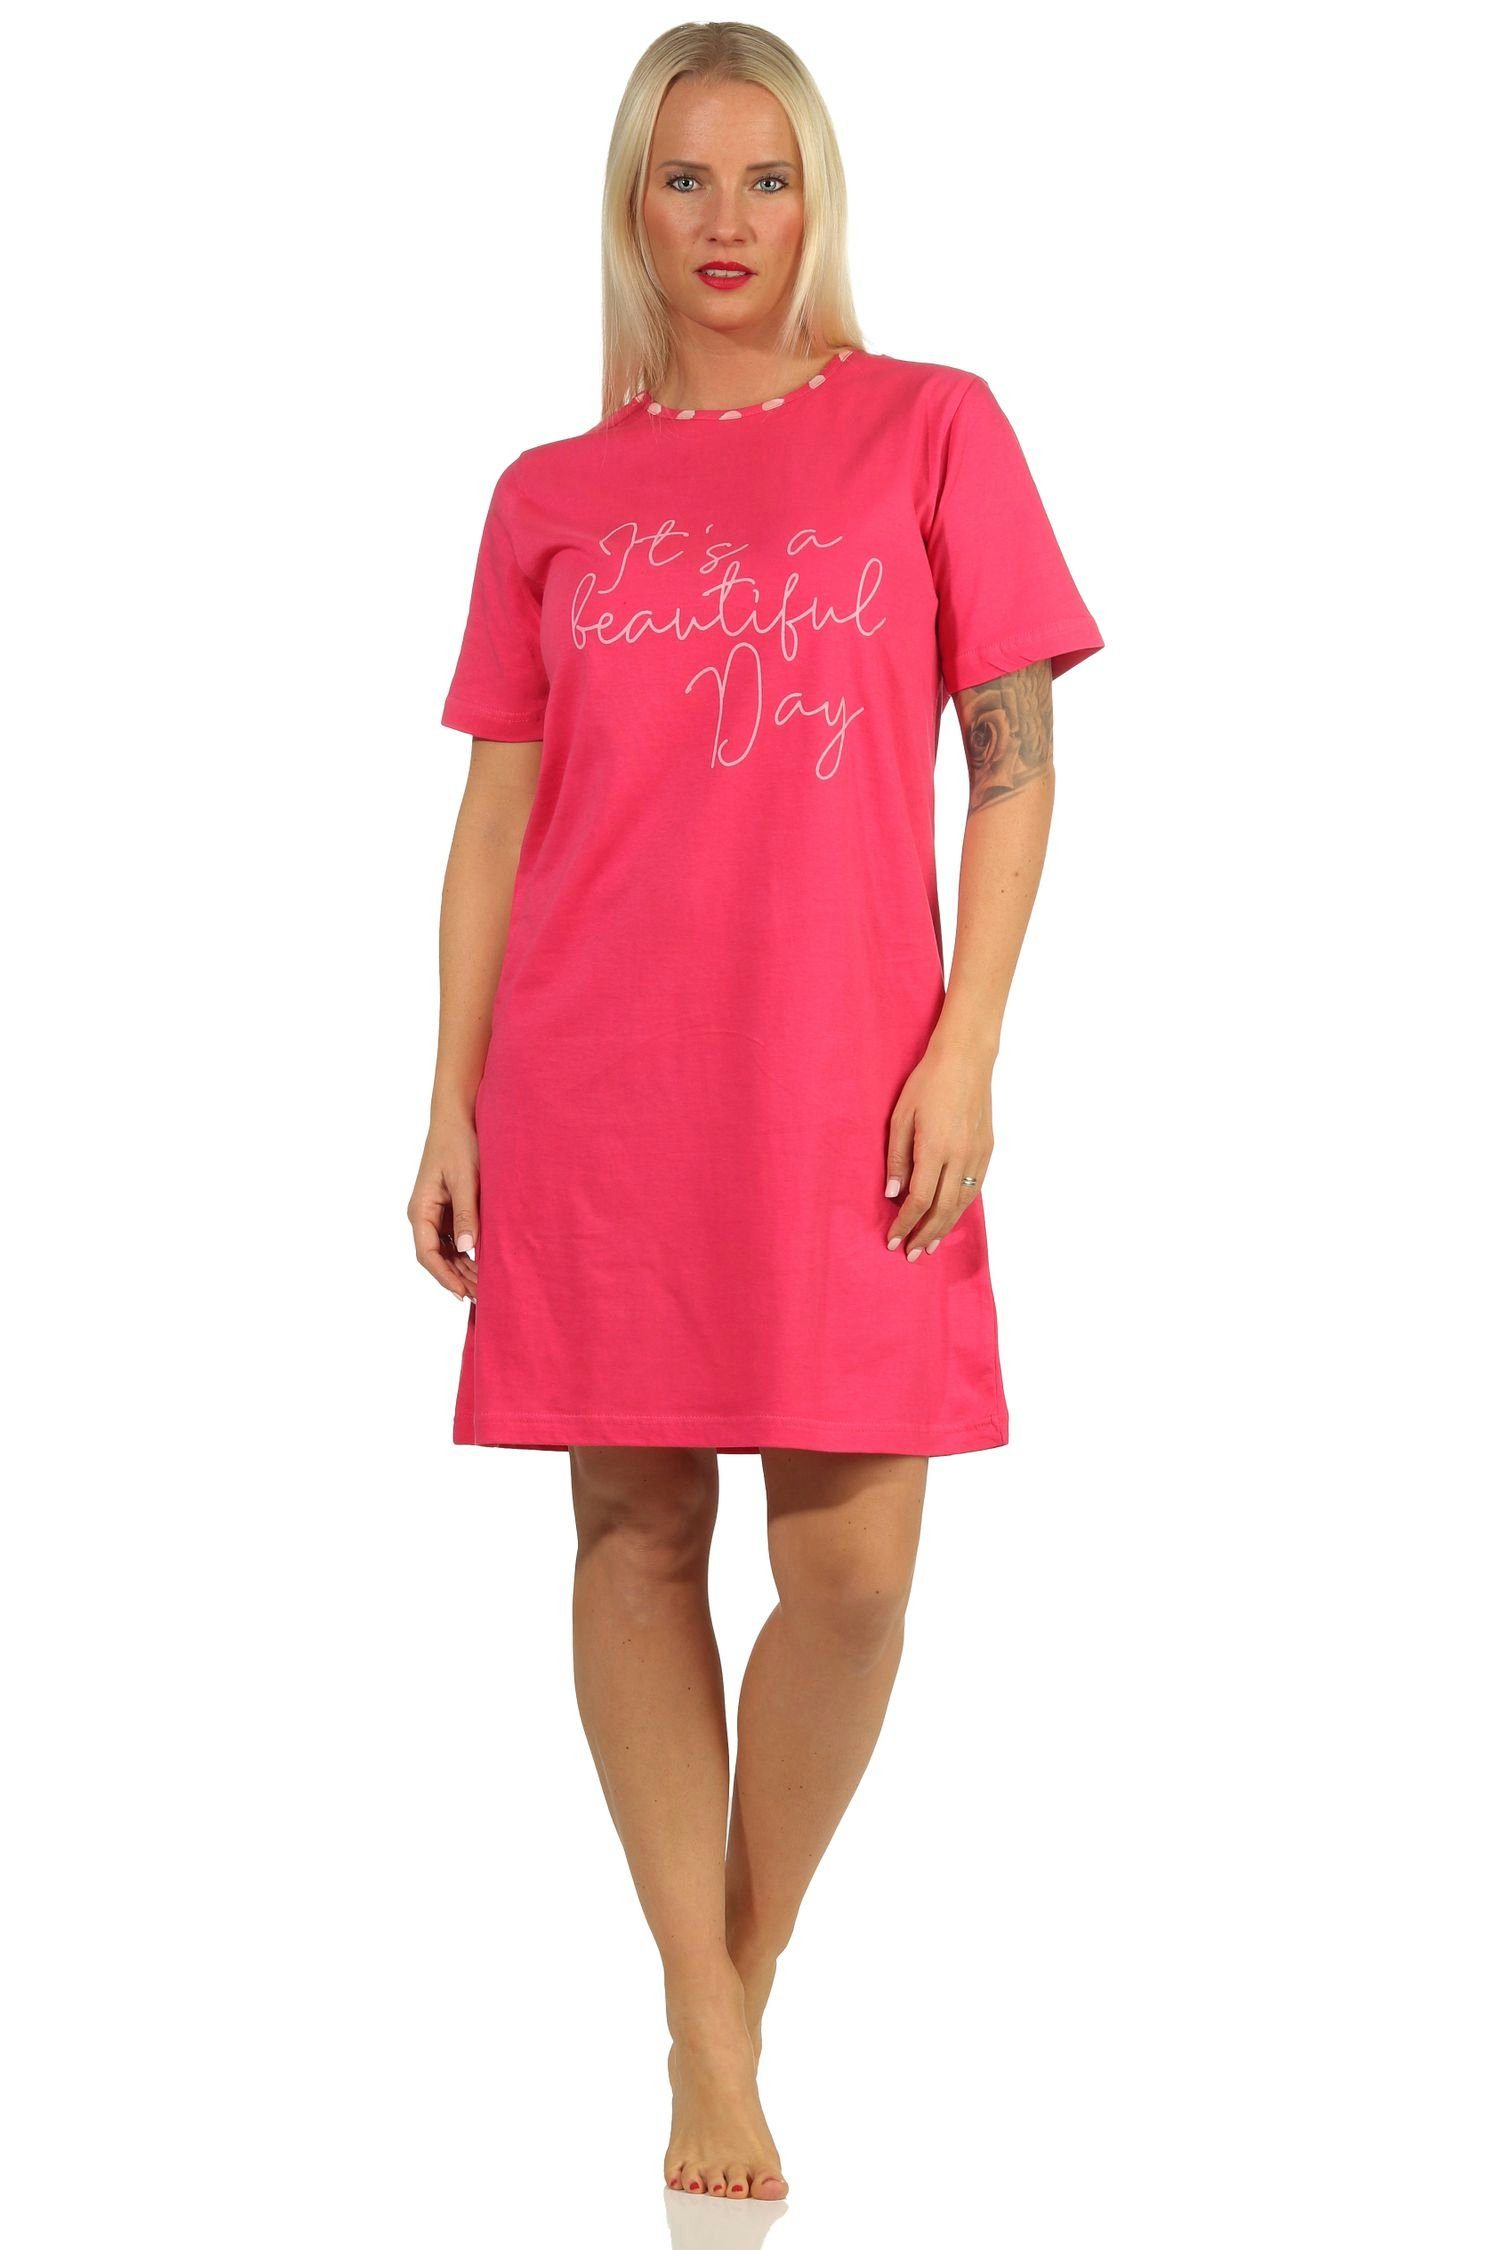 RELAX by Normann Nachthemd Damen kurzarm Nachthemd mit Zierspruch - 112 10 713 pink | Nachthemden